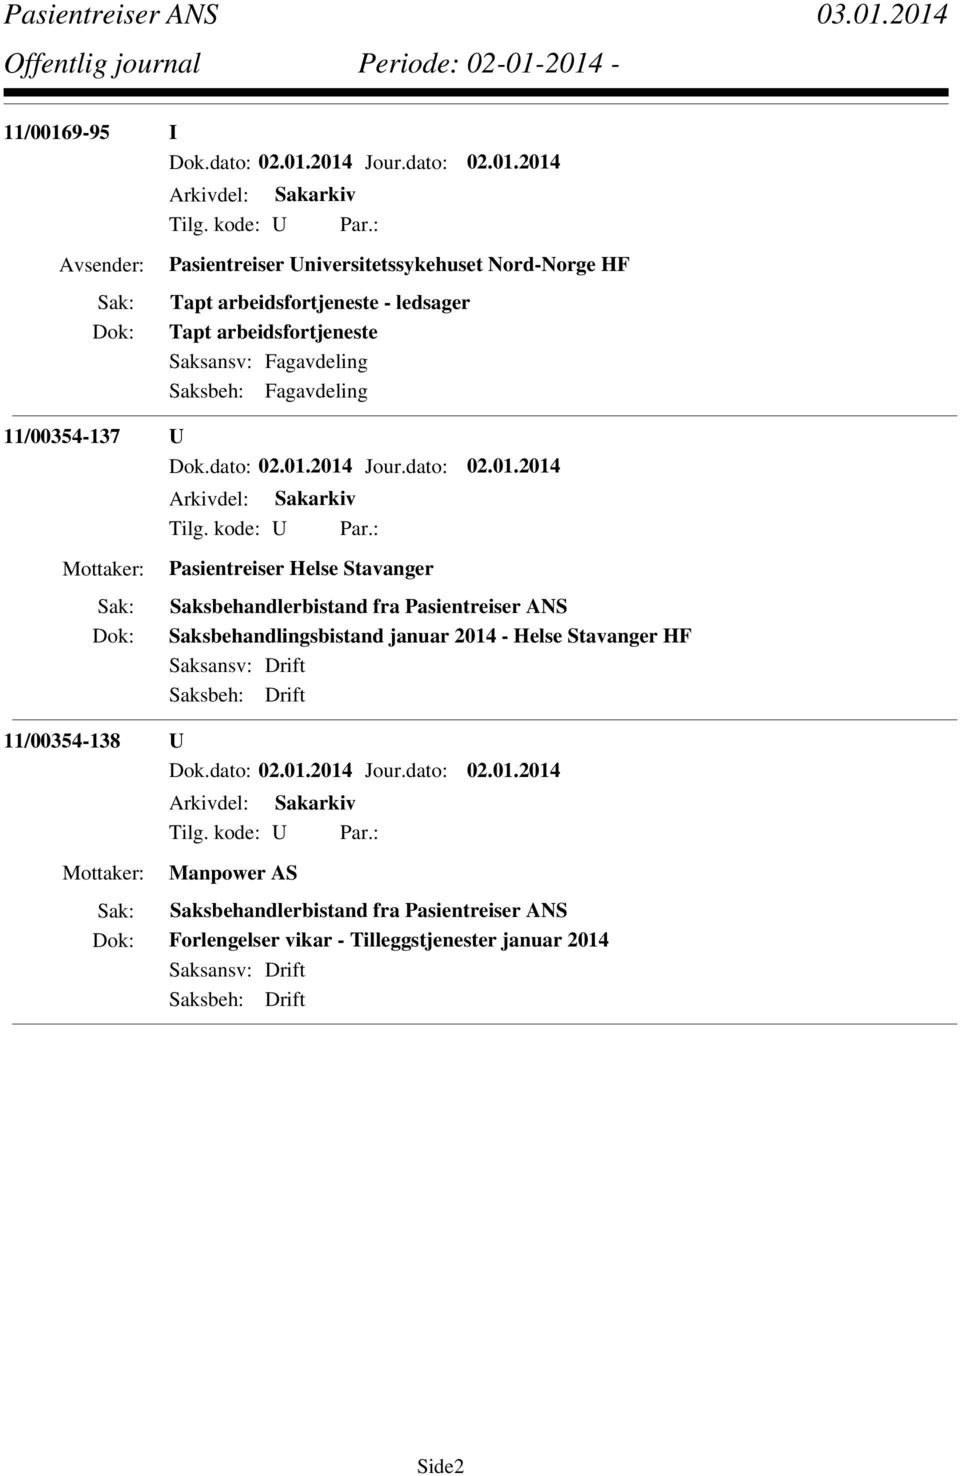 Pasientreiser ANS Saksbehandlingsbistand januar 2014 - Helse Stavanger HF Saksansv: Drift Saksbeh: Drift 11/00354-138